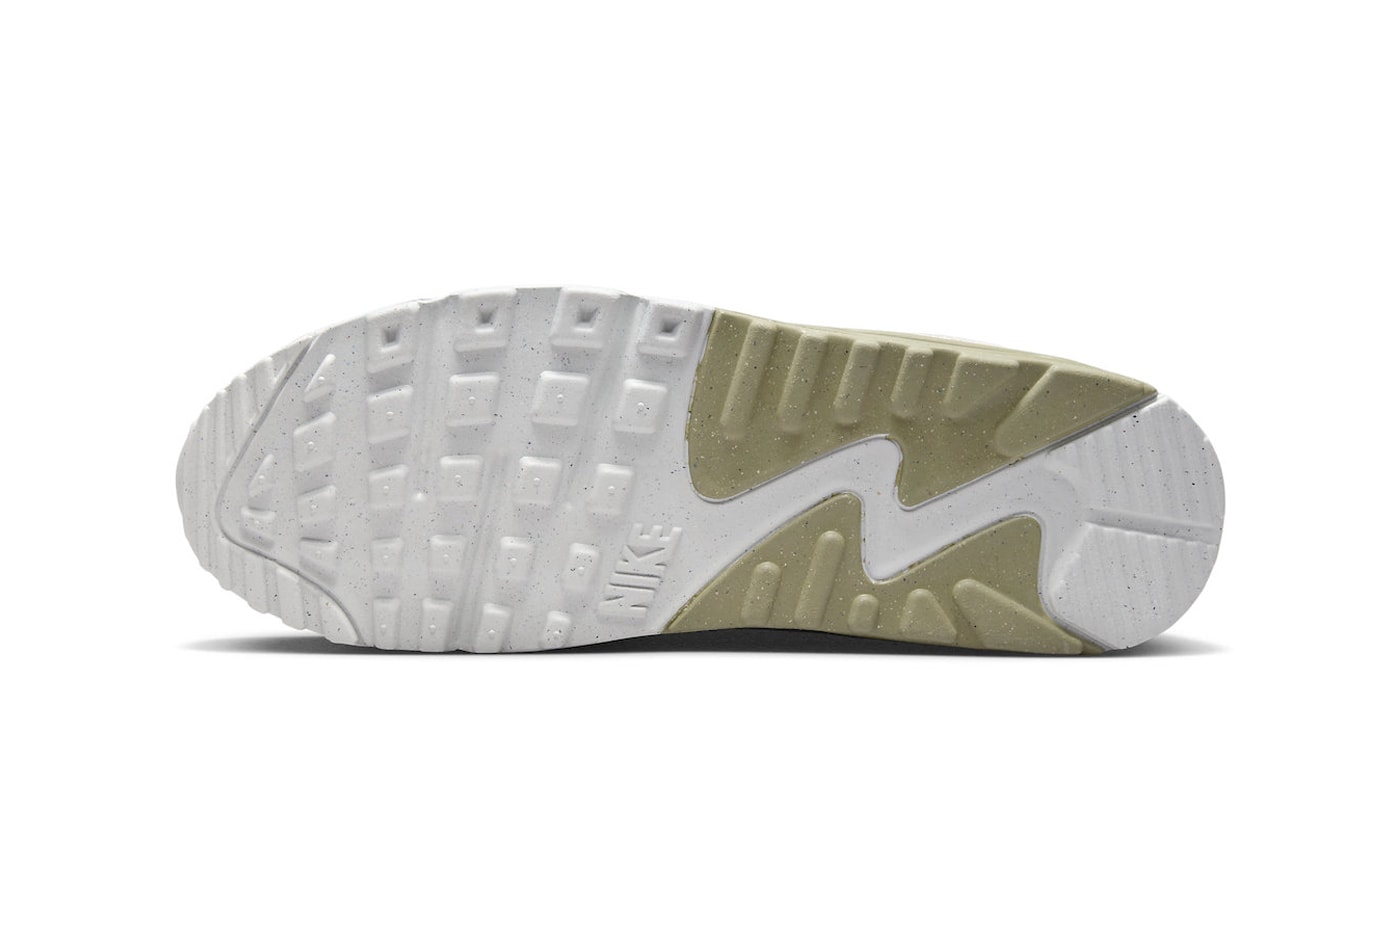 Nike Air Max 90 Arrives in "Phantom/Neutral Olive" FB9657-002 Phantom/Neutral Olive-Light Bone running shoes sneakers swoosh